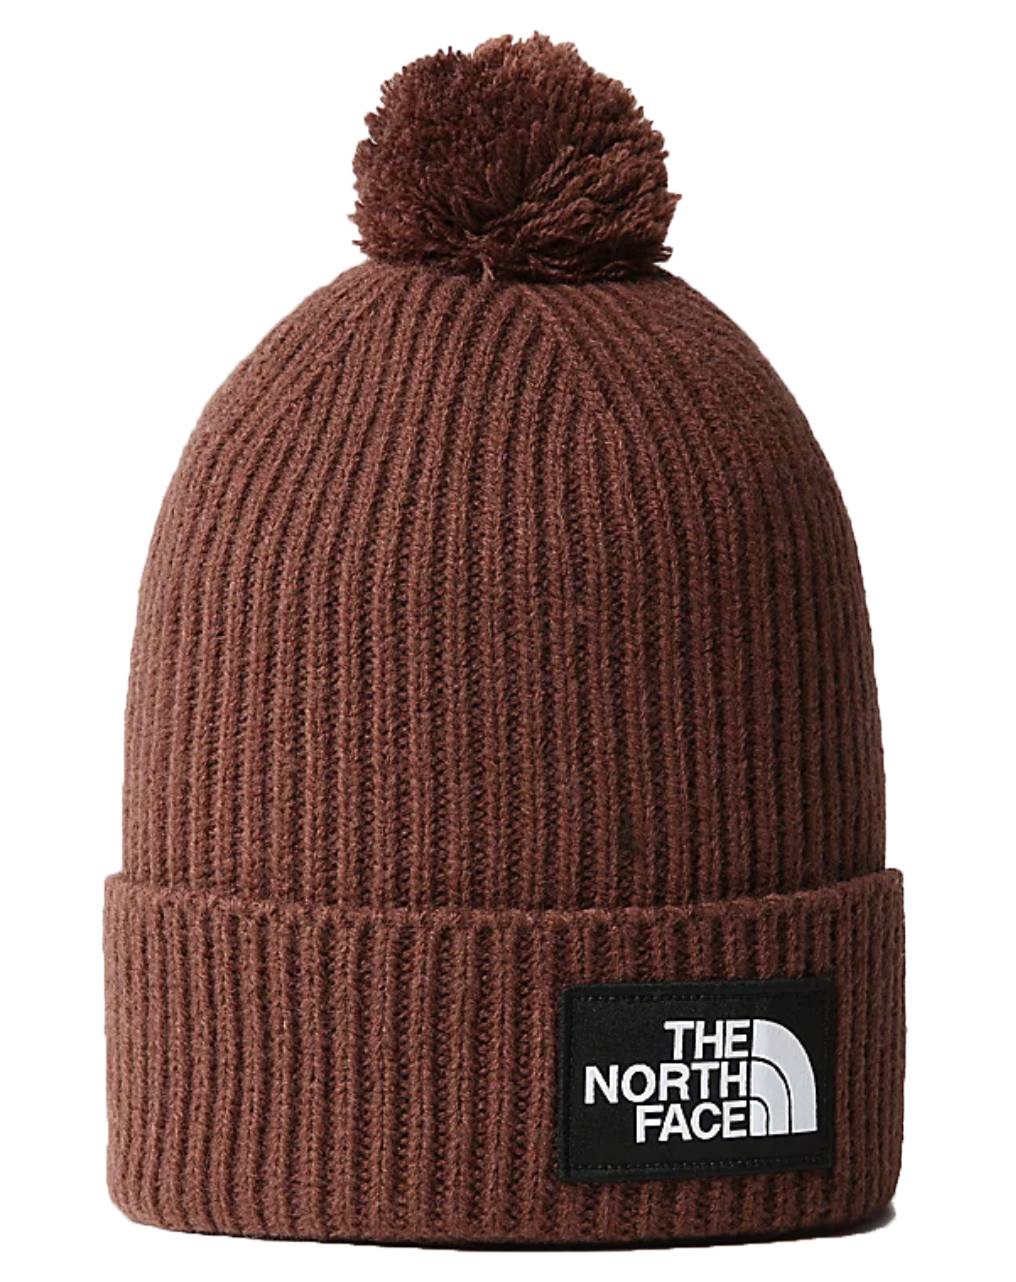 The North Face Cuffia Tnf Logo Box Pom Beanie Dark Oak Marrone Unisex ...